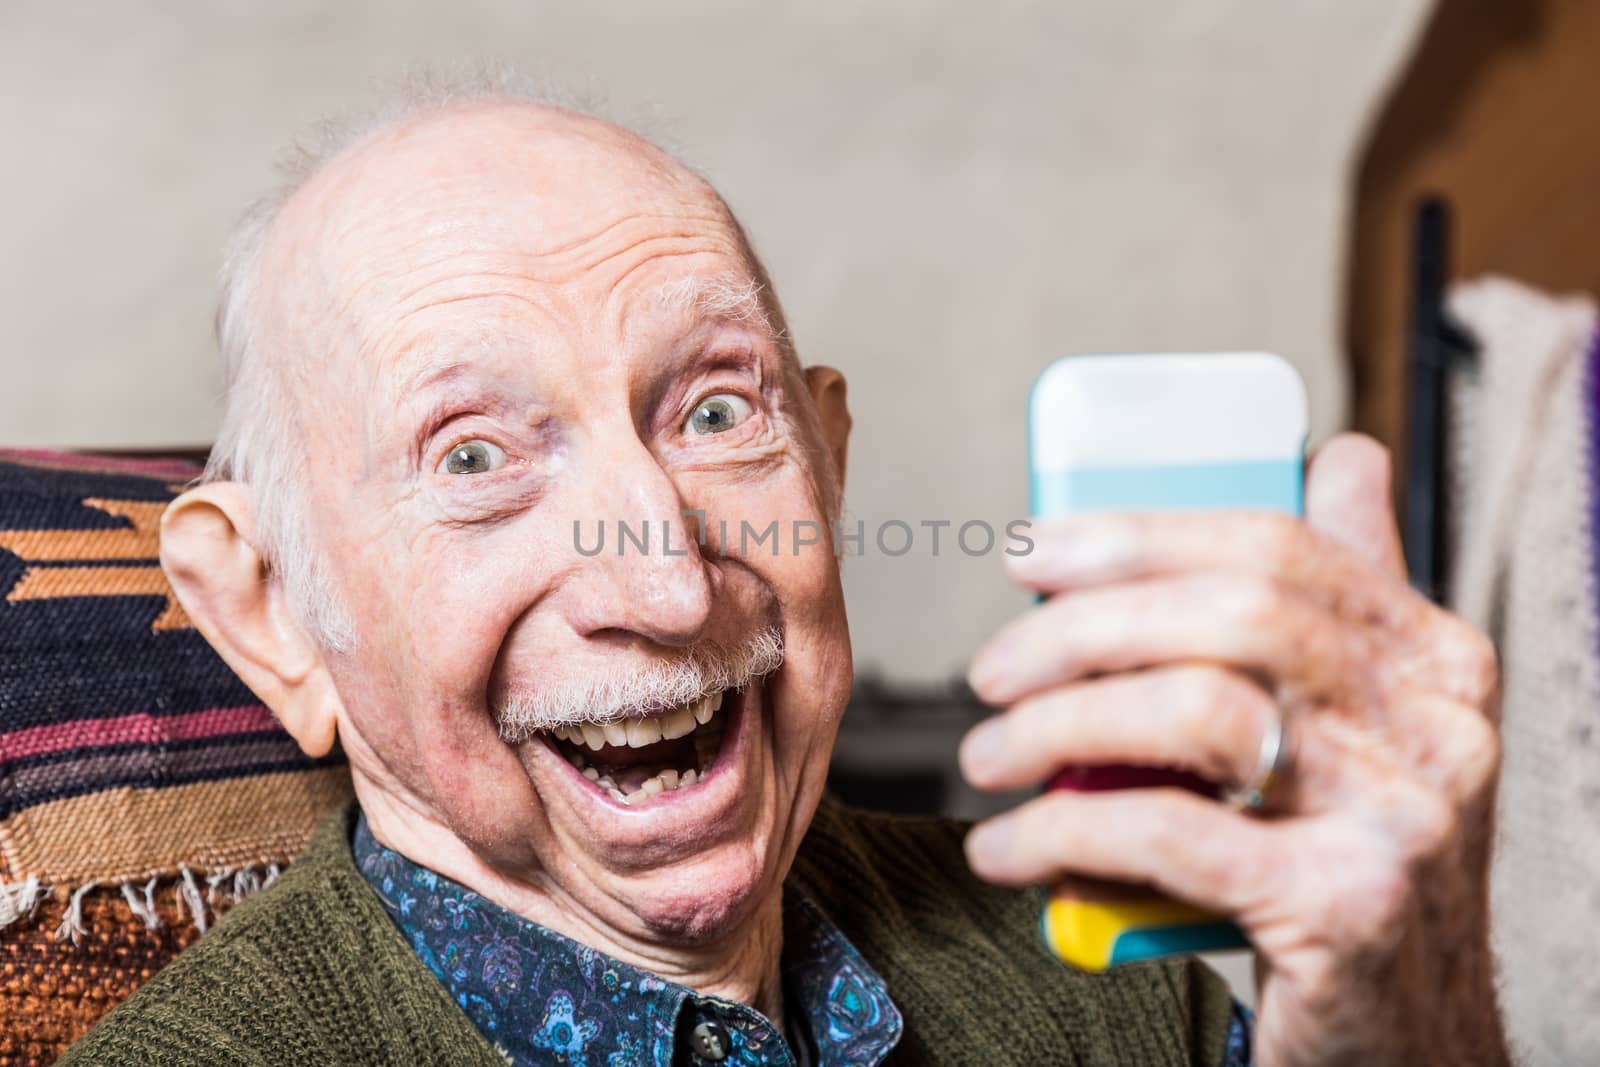 Older gentleman taking a selfie with smartphone